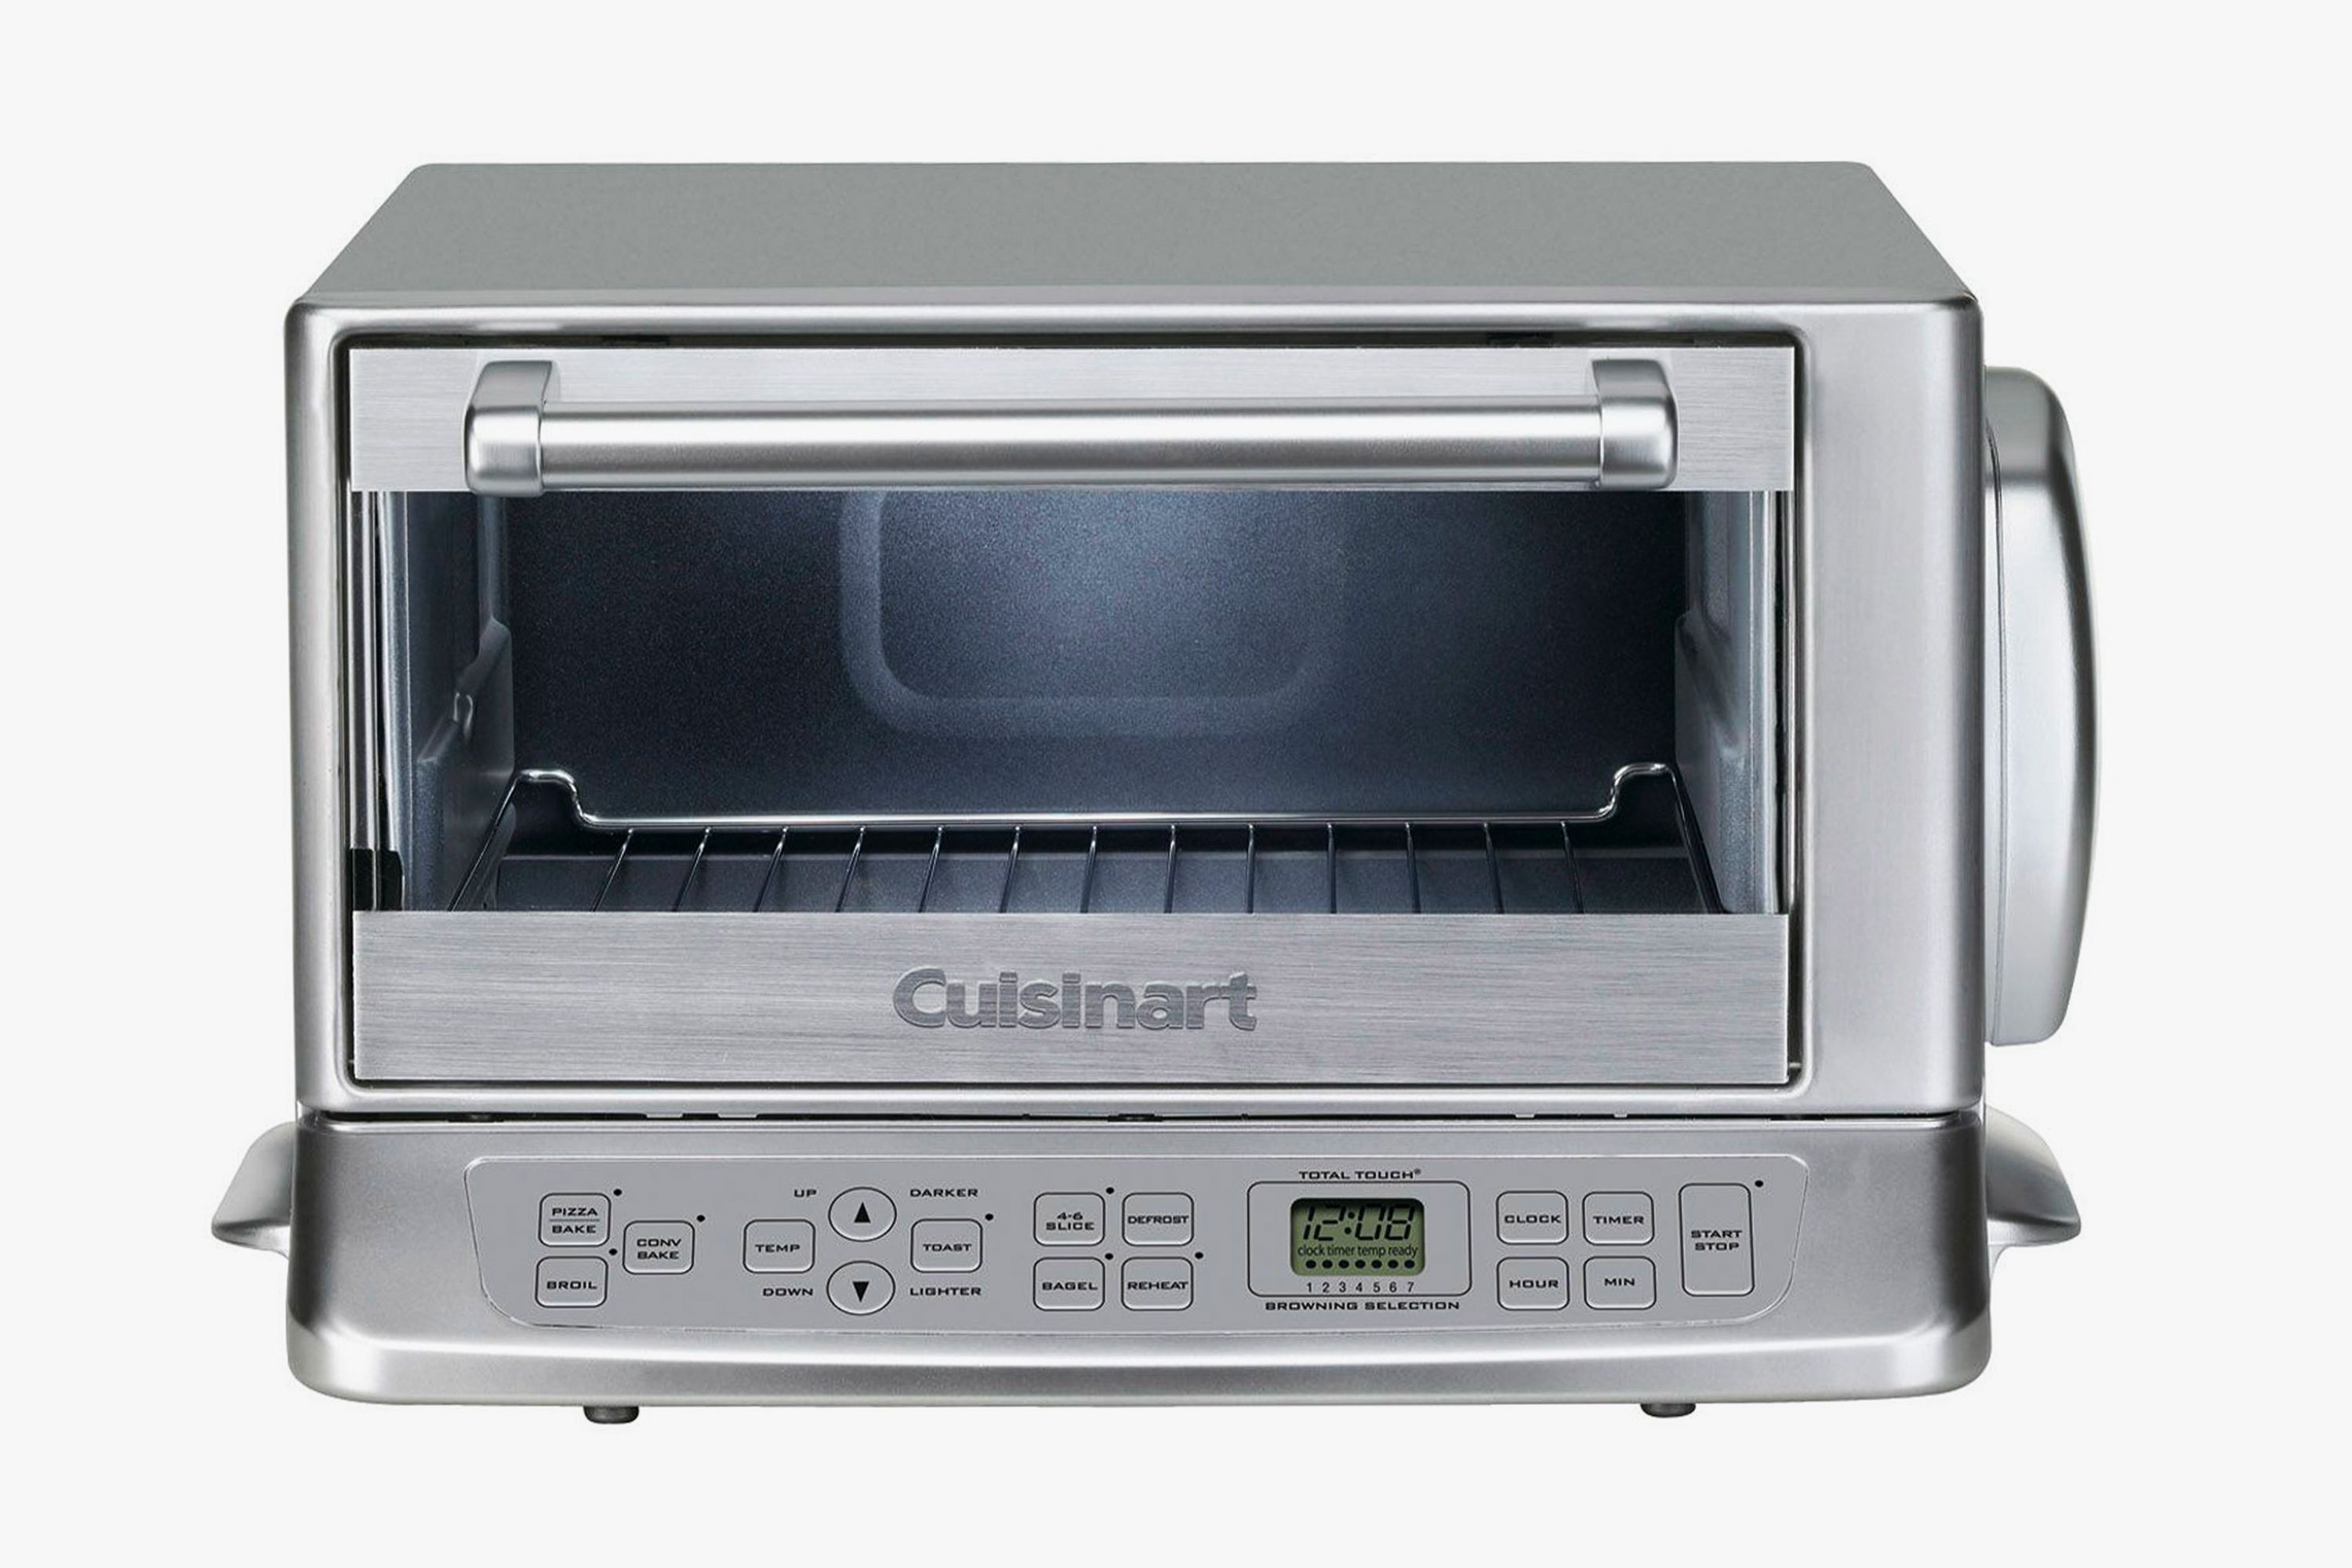 Cuisinart Exact Heat Toaster Oven